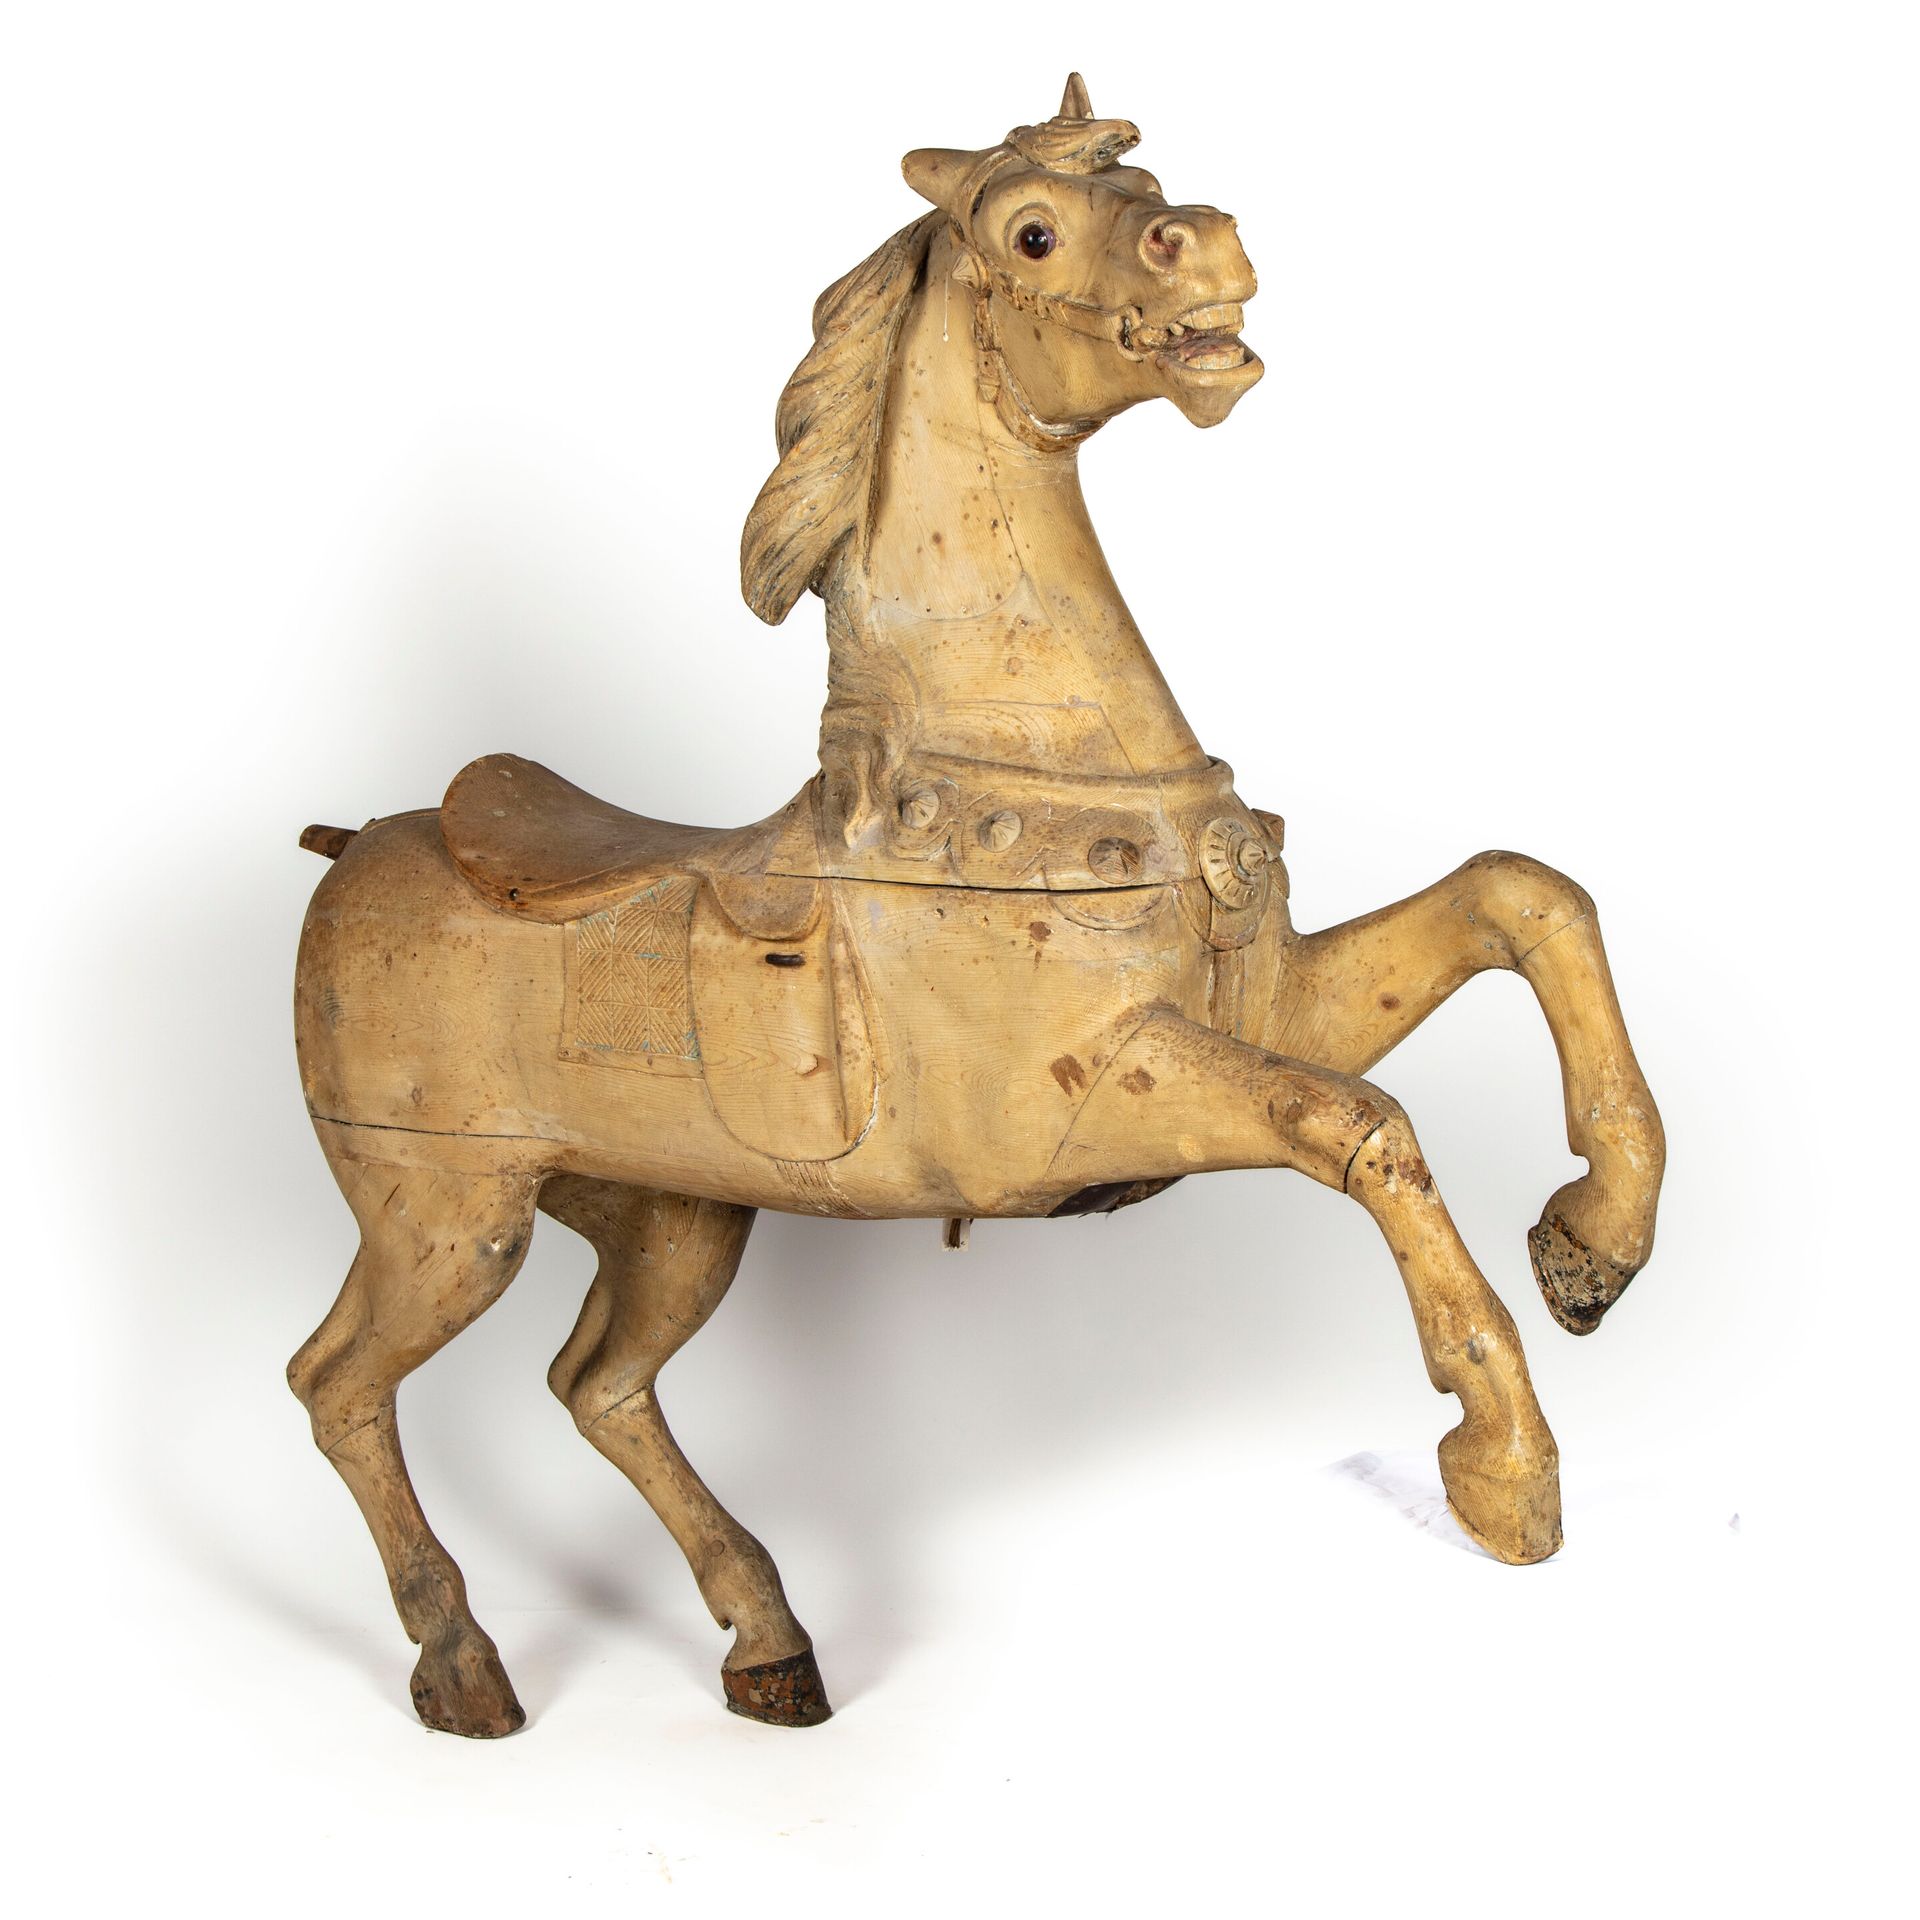 Null 无名氏 - 在古斯塔夫-巴约尔的品味中

重要的木雕奔马，有多色的痕迹，形成一个旋转木马式的主题

H.115厘米；宽113厘米；长30厘米